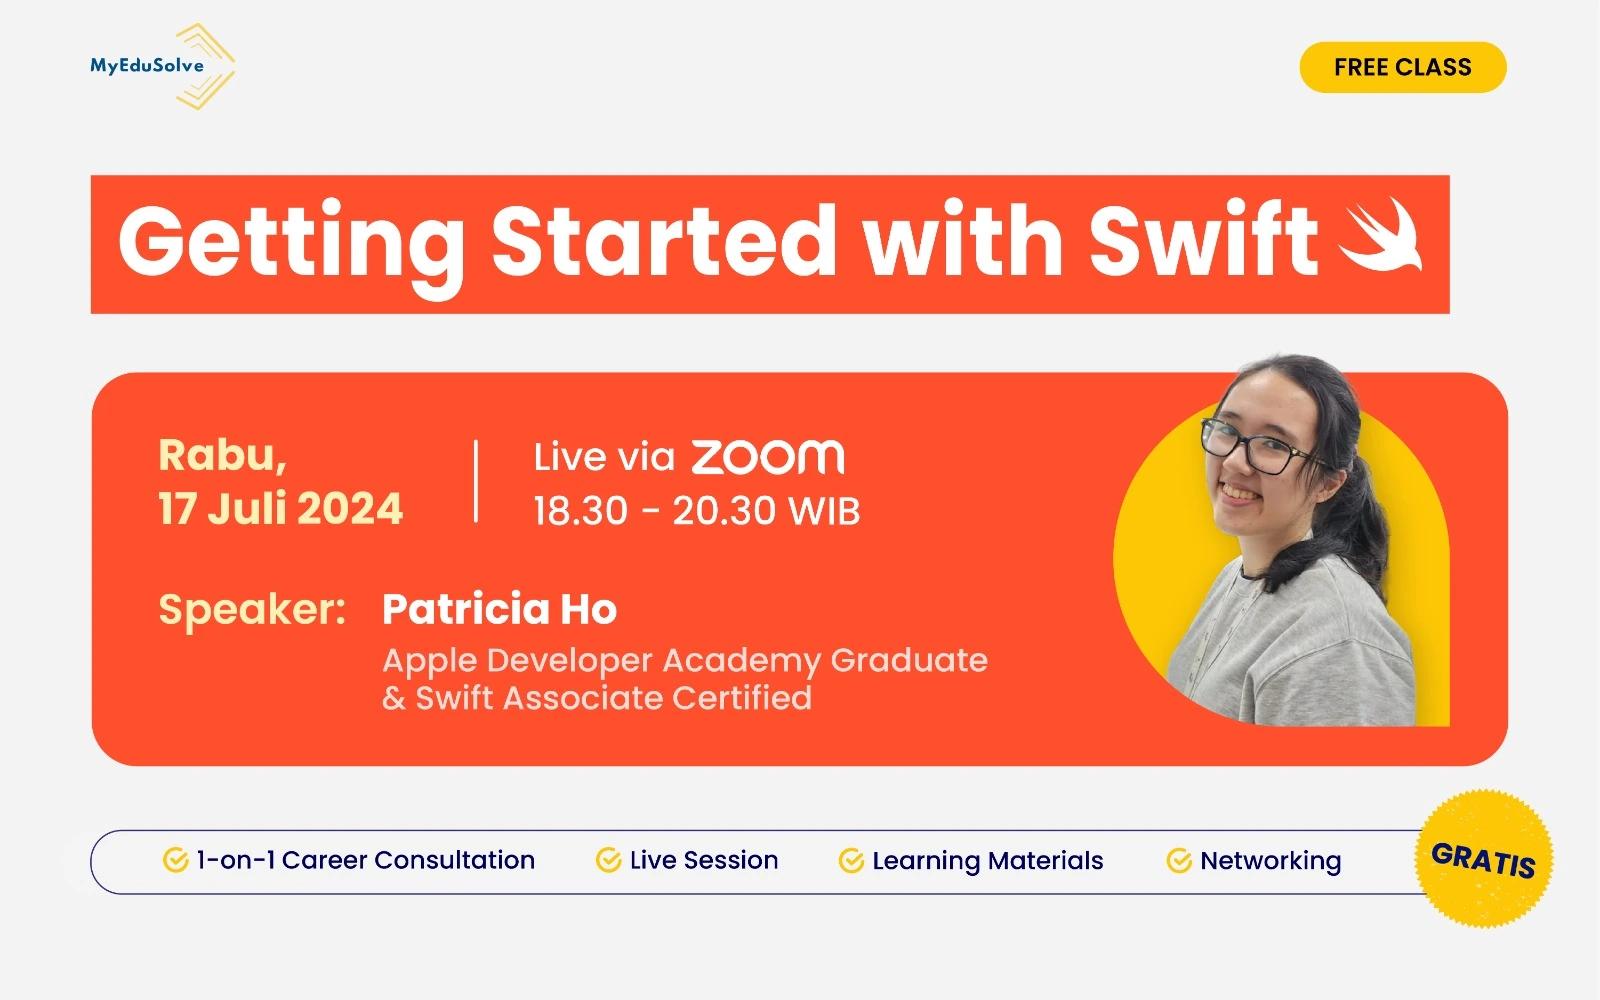 Mulai Karier Sebagai iOS Developer dengan Kelas IT  "Getting Started with Swift" dari MyEduSolve! cover